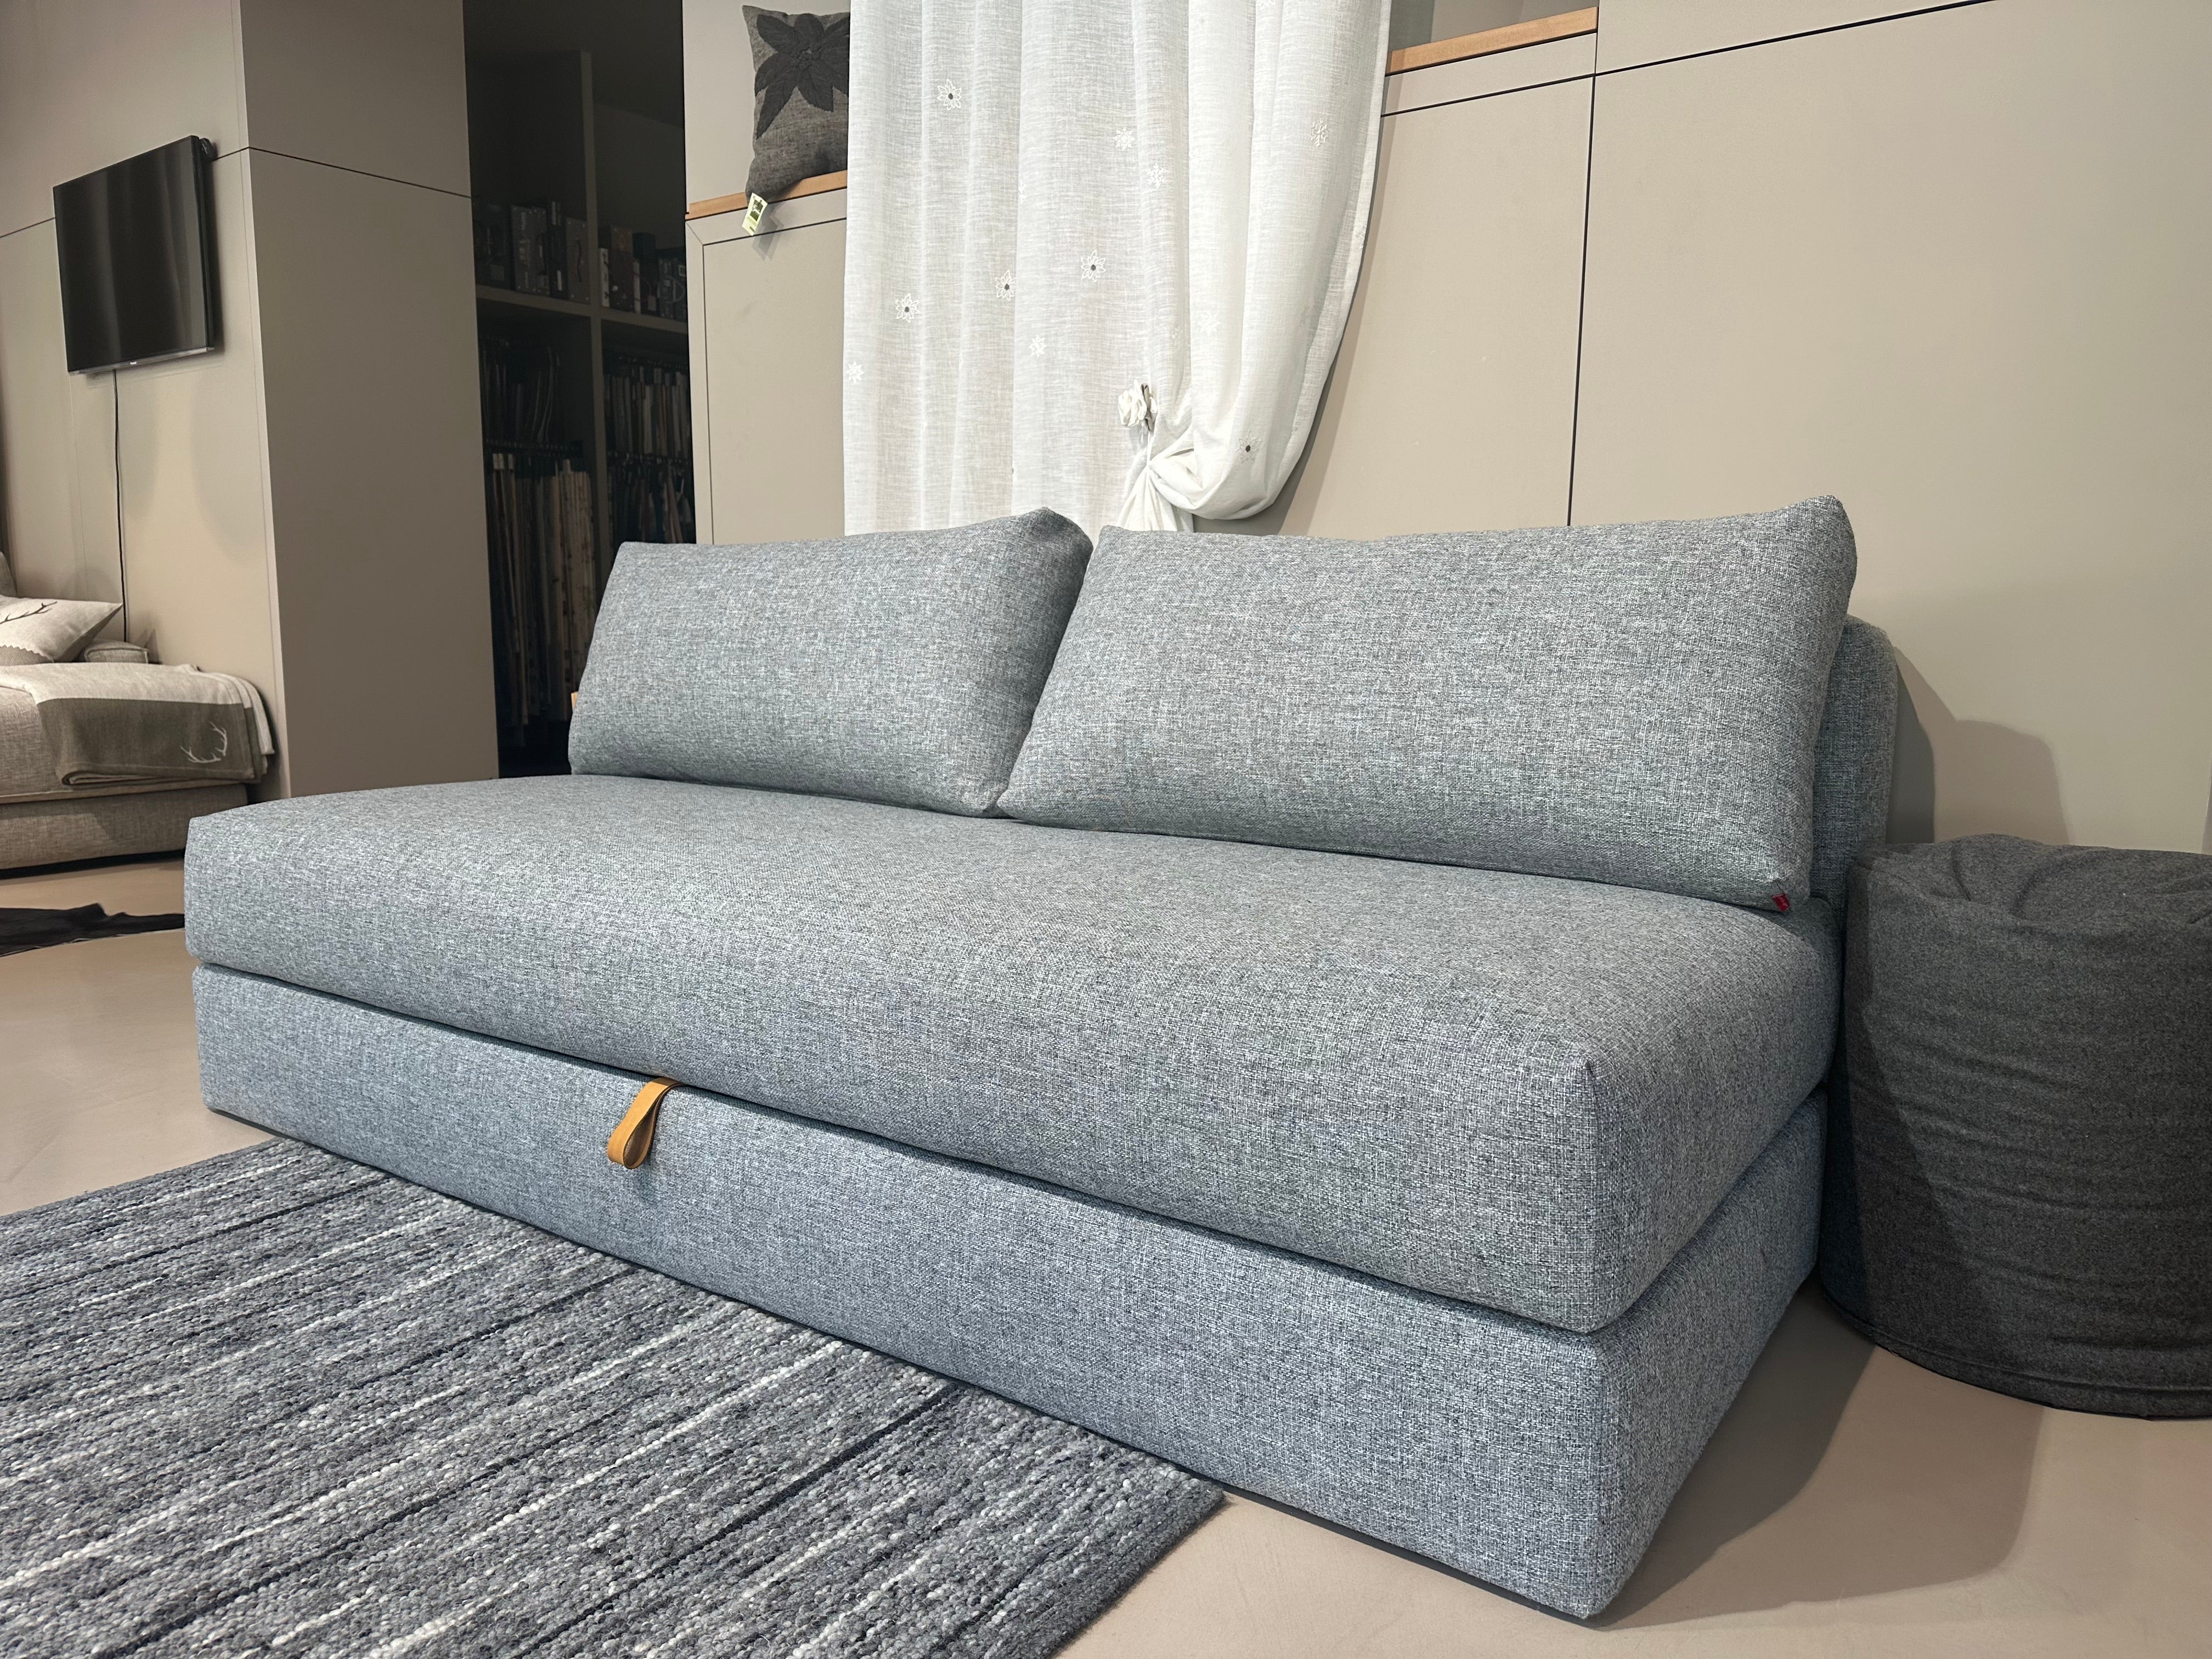 Divano letto in PRONTA CONSEGNA, design nordico, rivestimento tessuto color grigio, 200 cm, OSVALD - Gaidra HOME